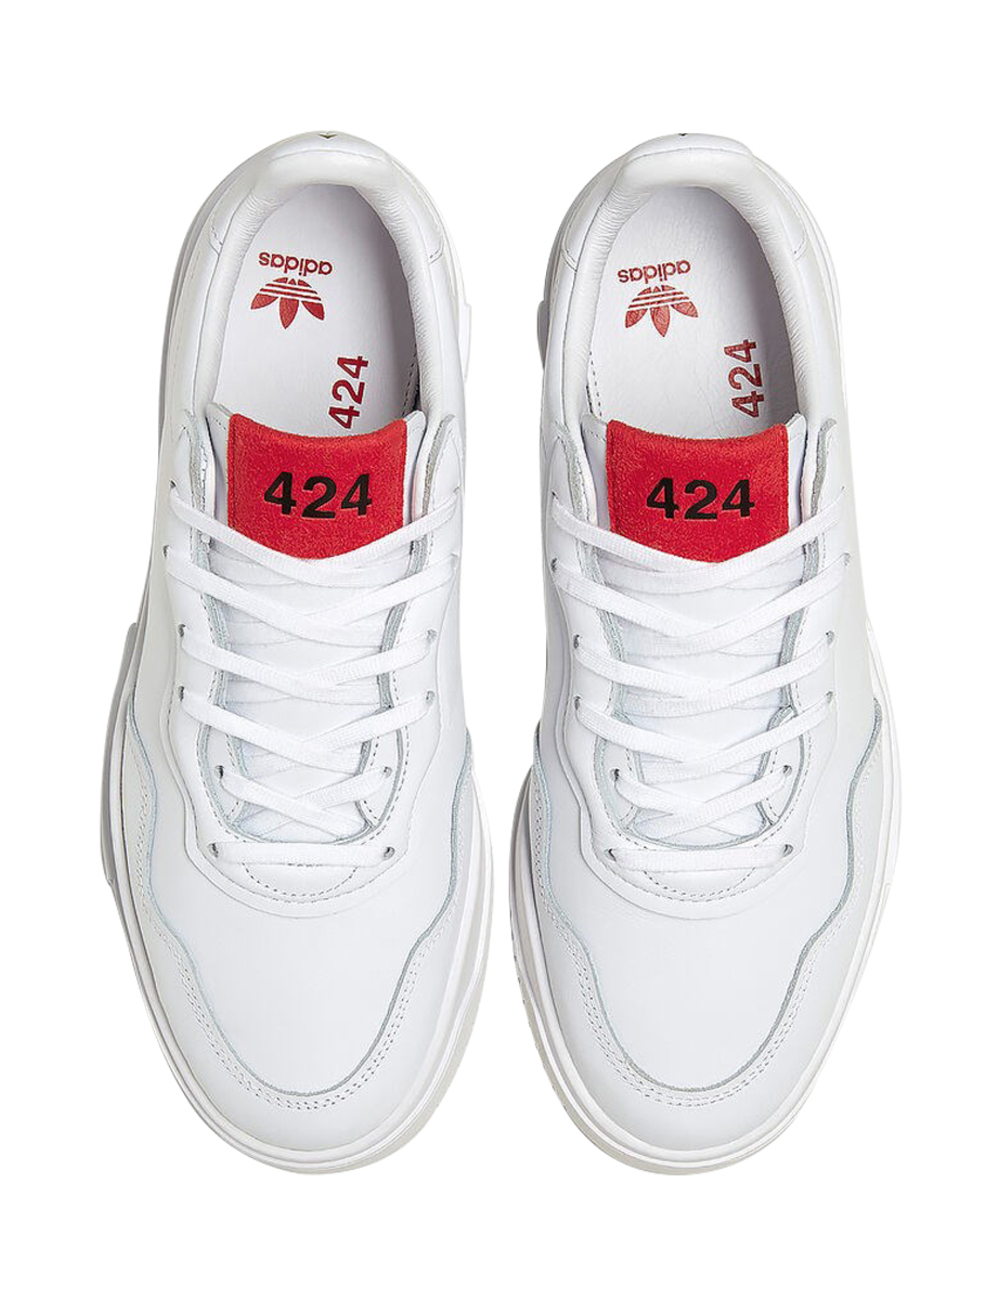 424是adidas的最新合作者，將424的傳統輪廓和現代街頭服飾美學與adidas體育傳統的純淨精緻感融合在一起。 SC Premiere運動鞋採用光滑的粒面皮革製成，具有圓頭，對比色板，同色明線縫